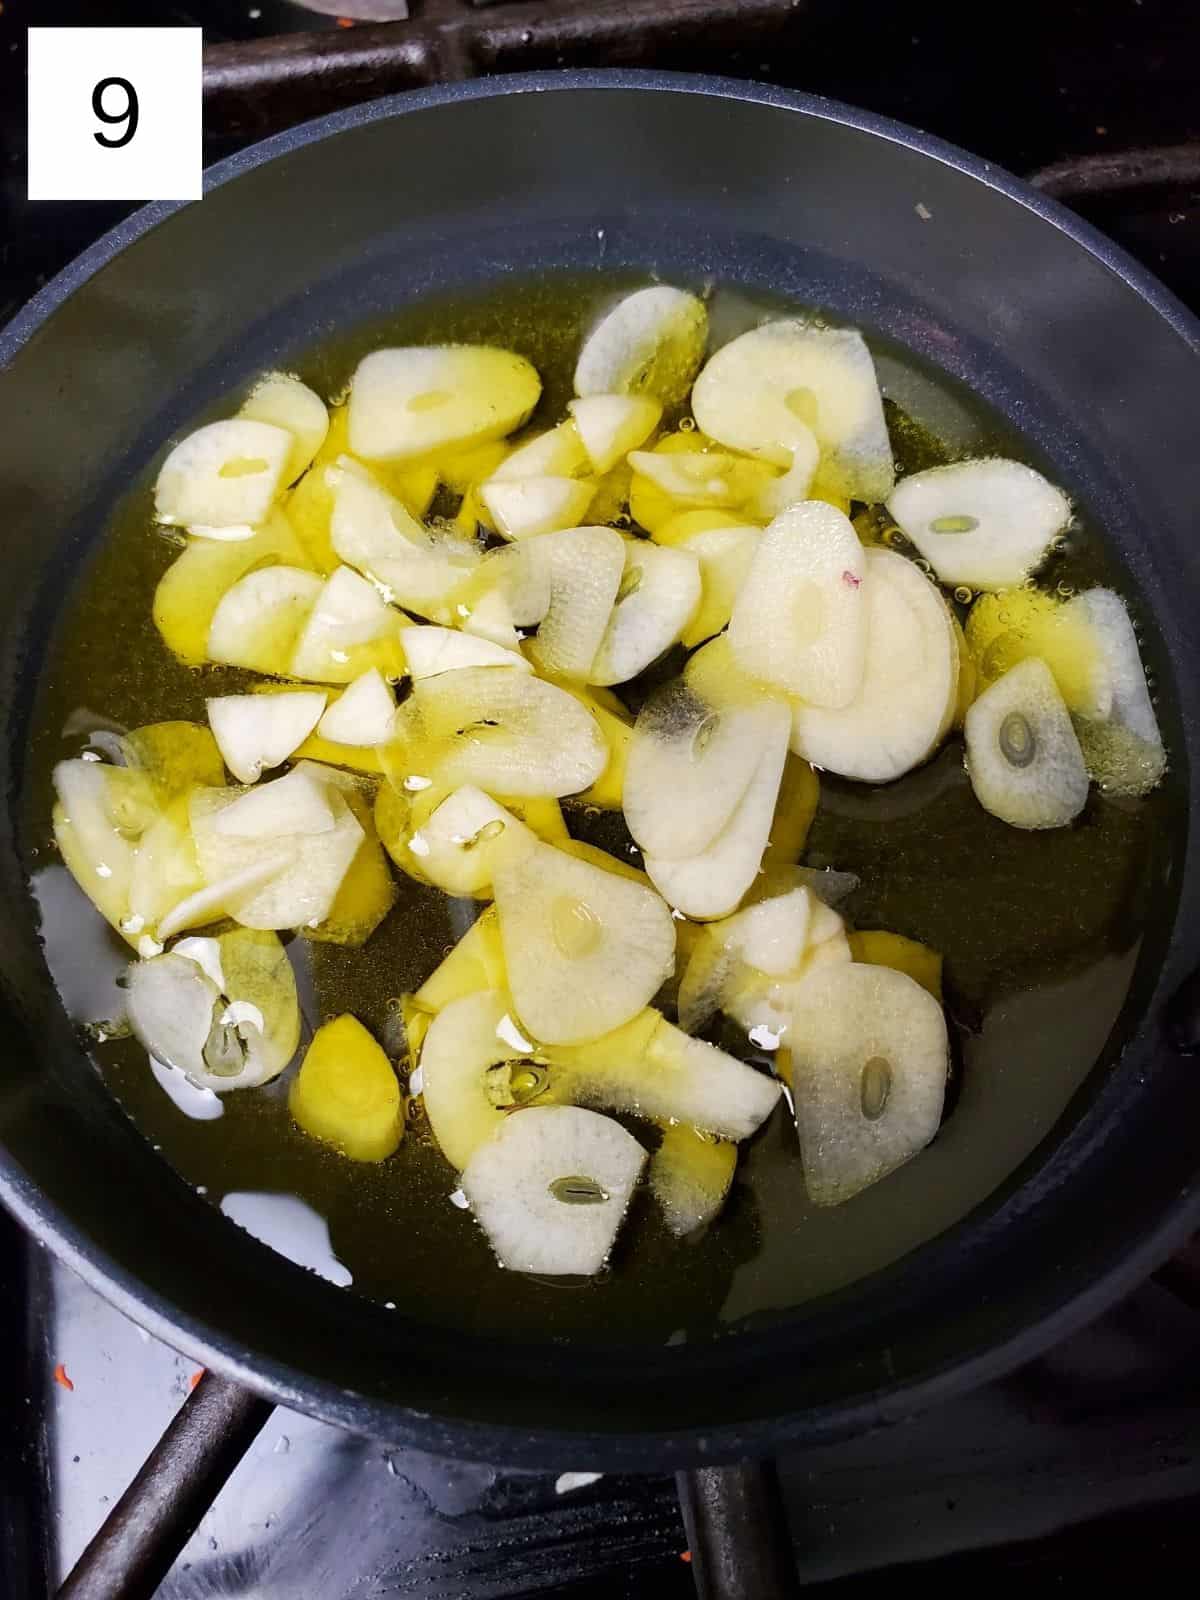 sautéing the garlic slices in a pot using avocado oil.